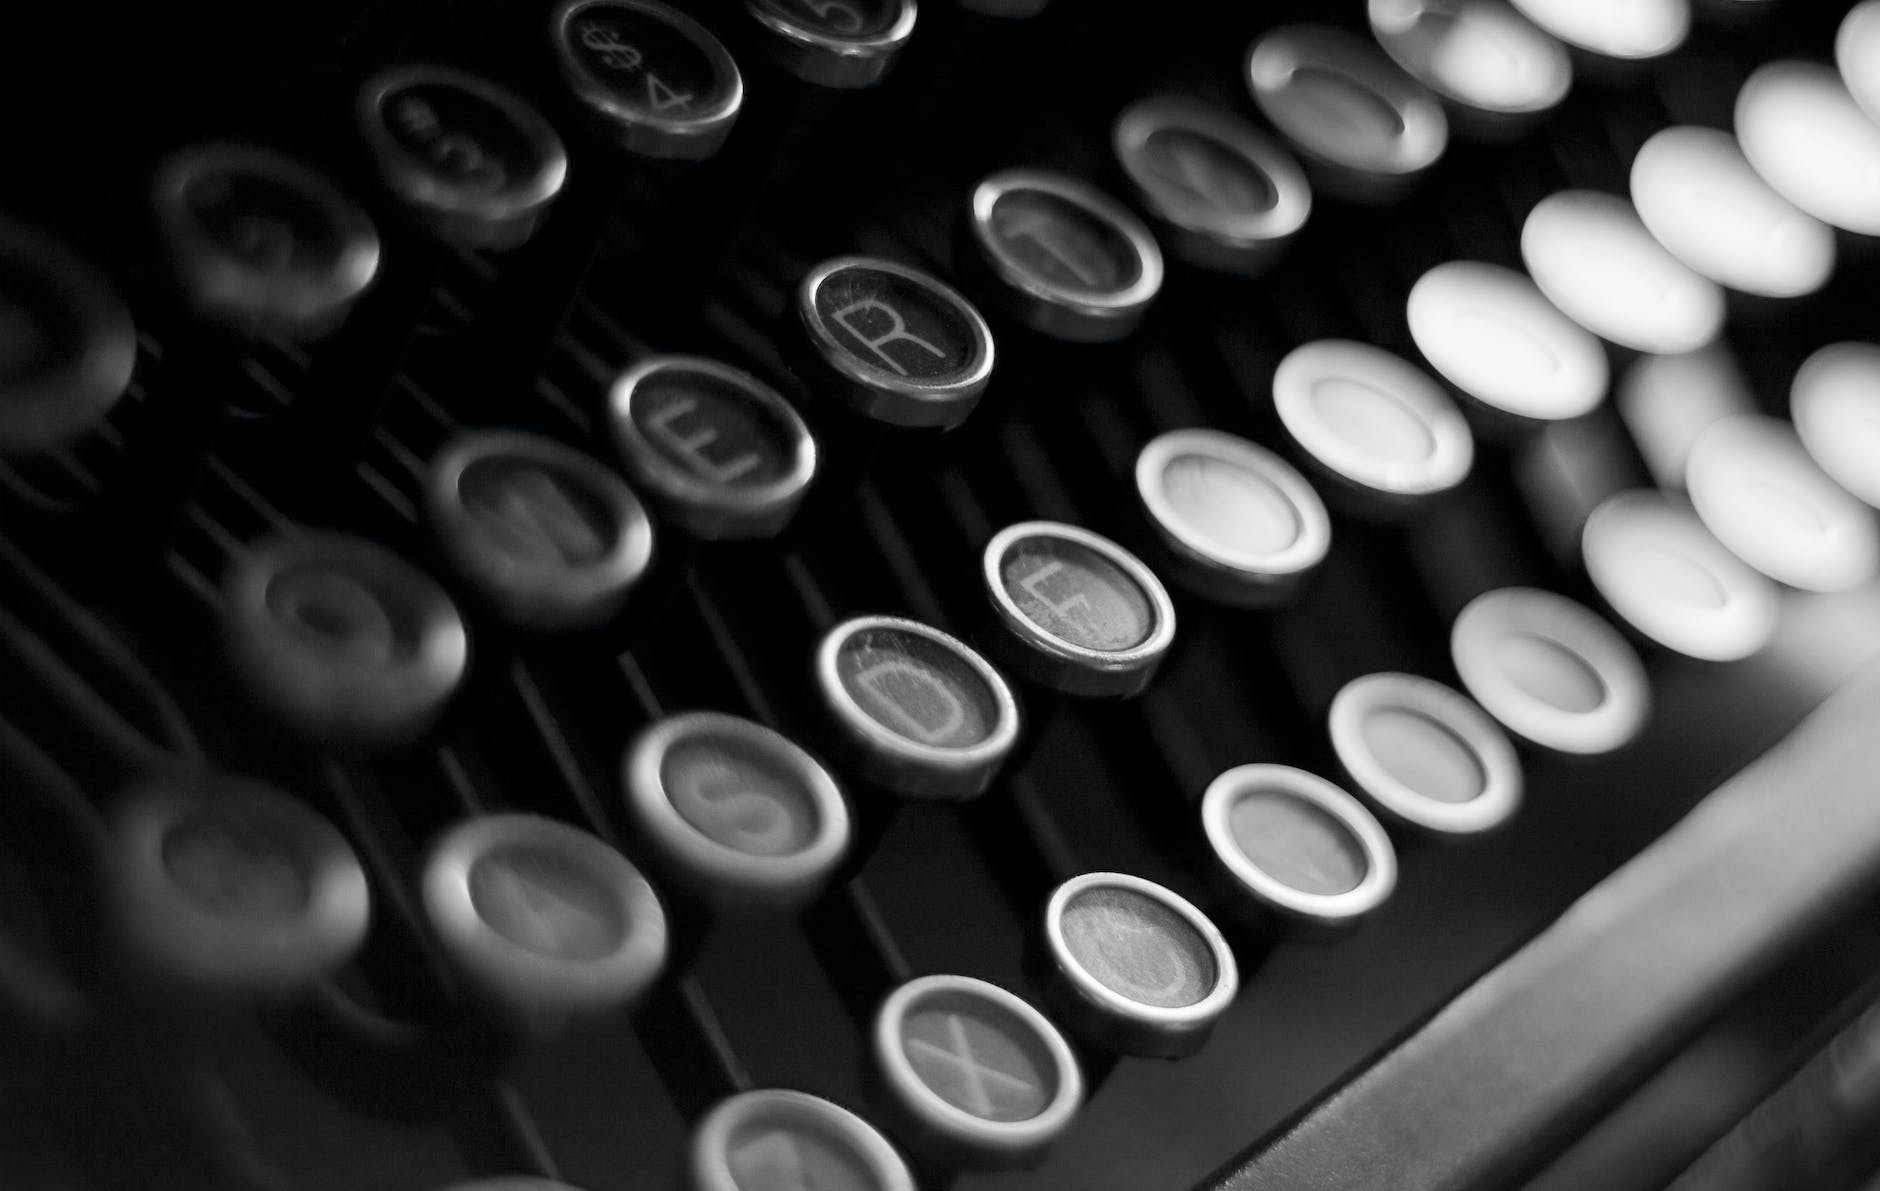 Closeup photo of a vintage typewriter